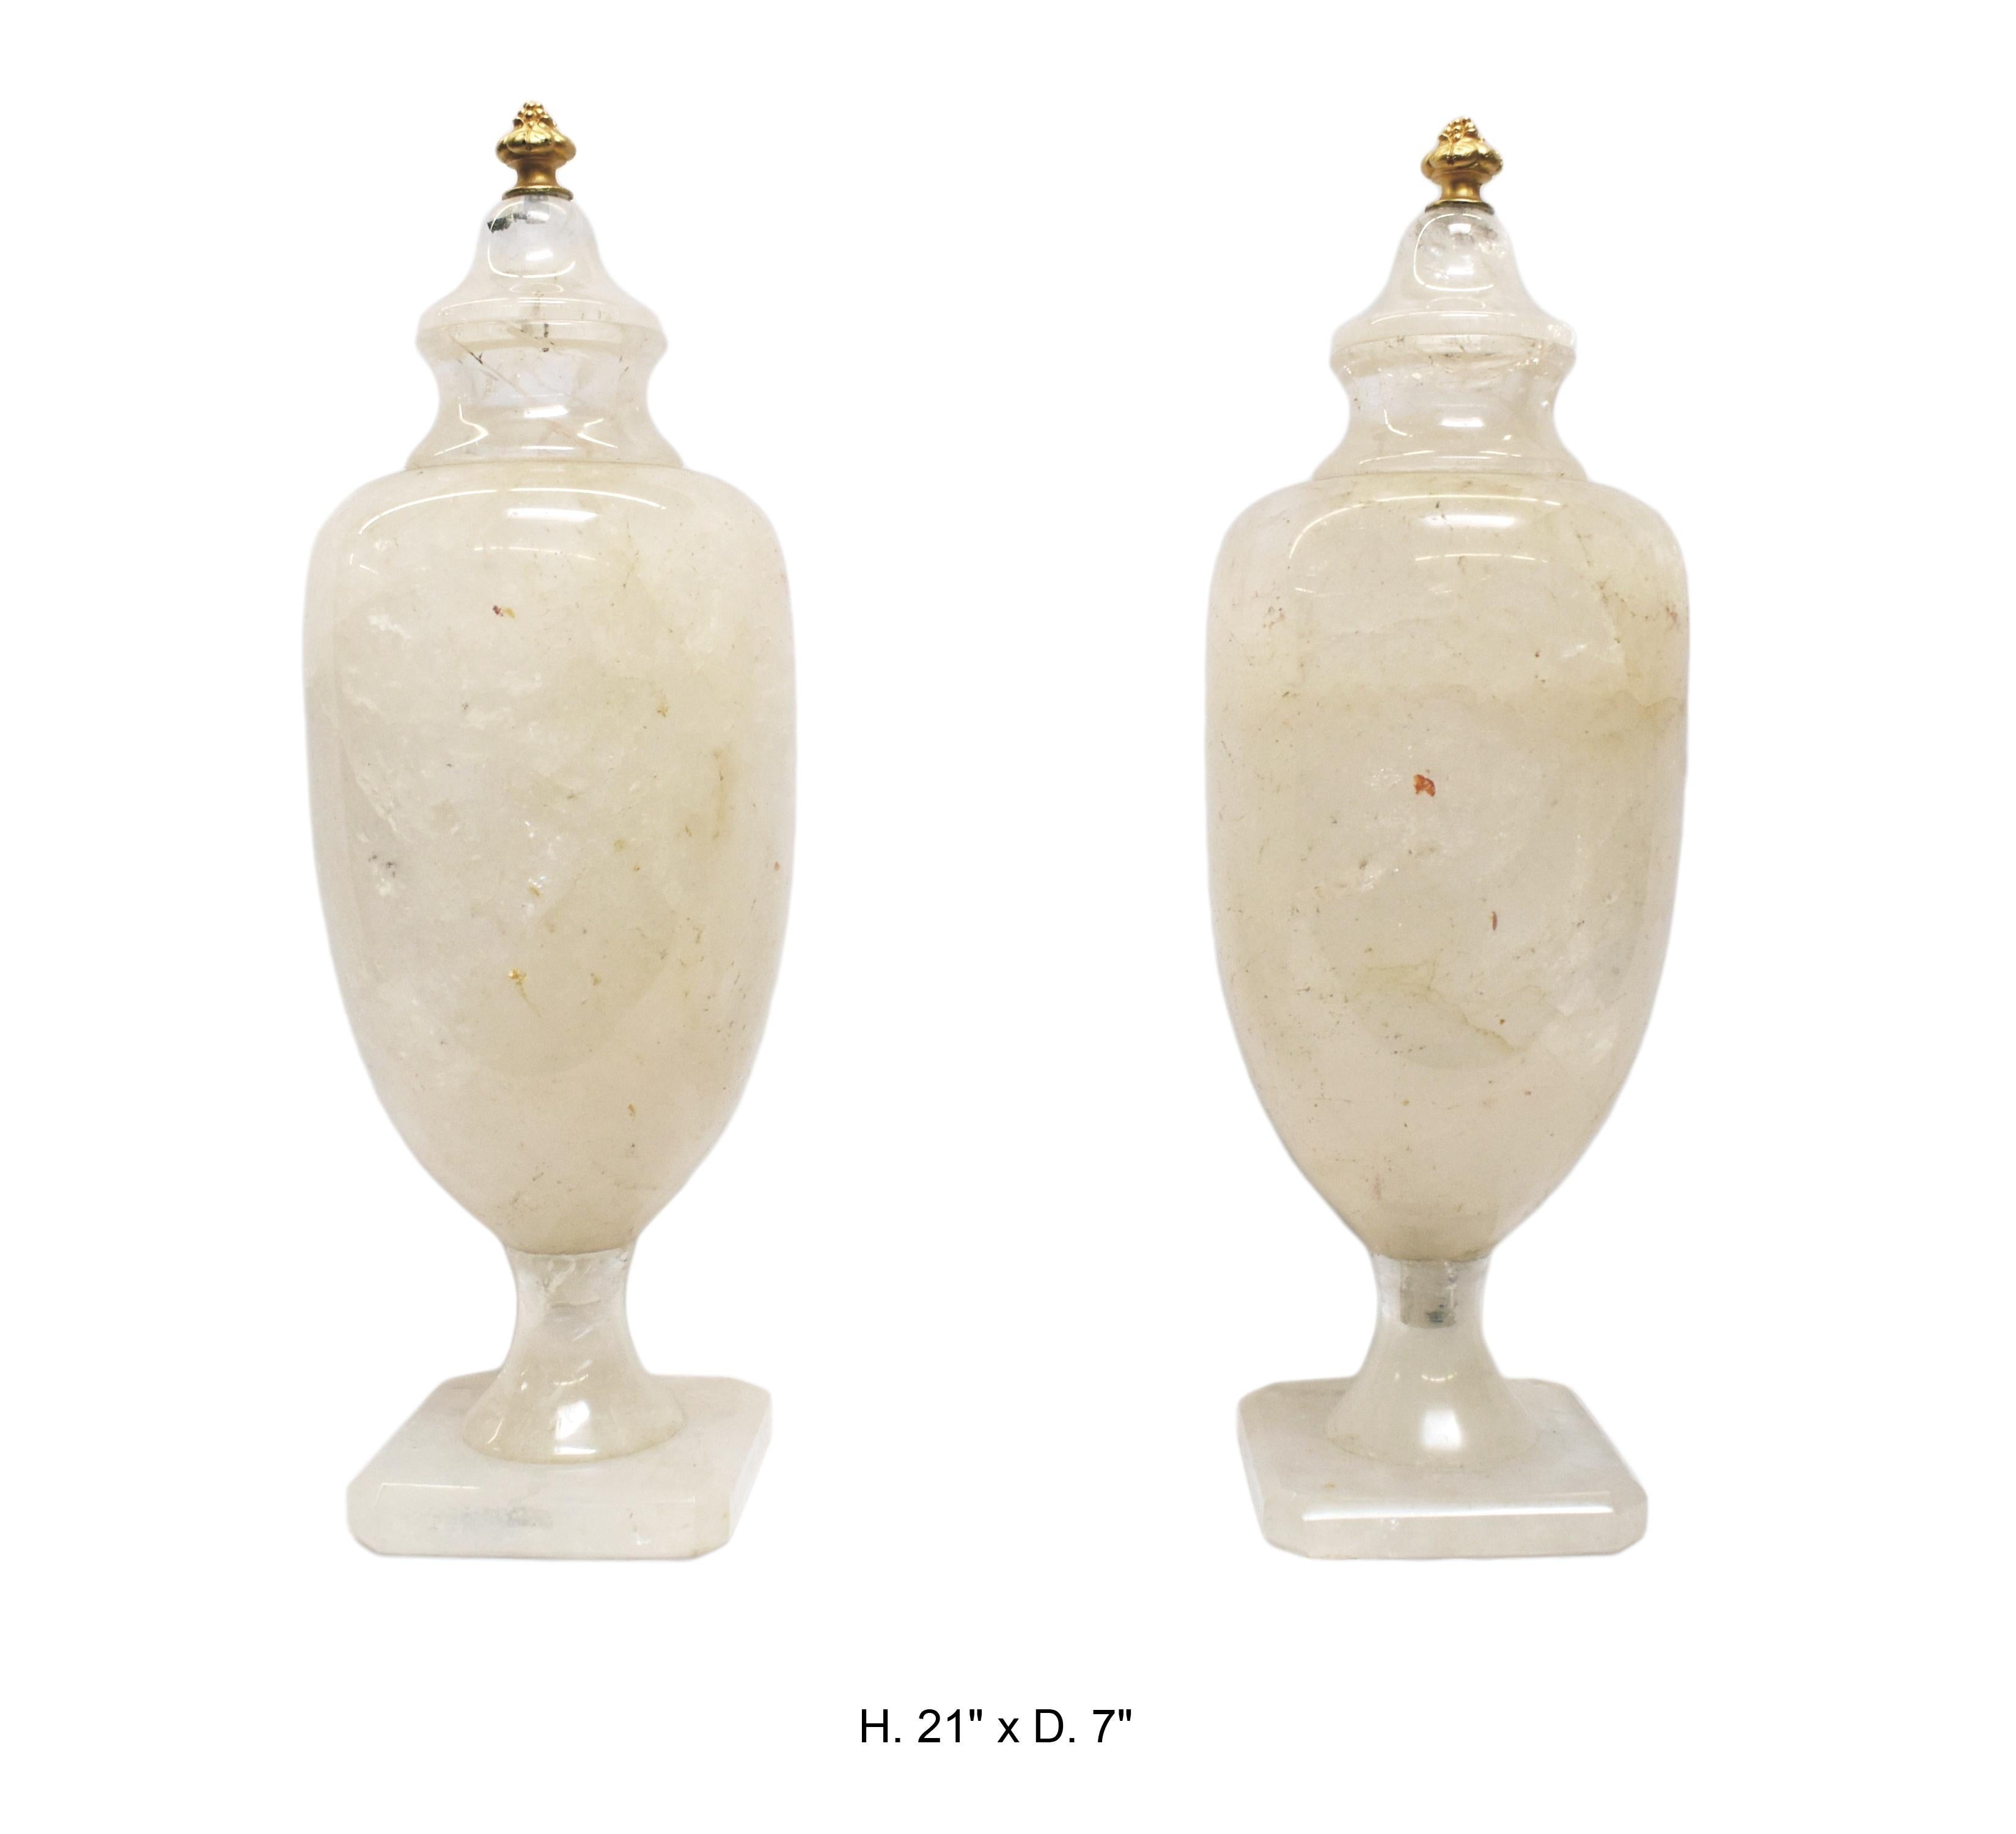 Magnifique paire de vases couverts en cristal de roche de style néo-classique, sculptés et polis à la main. Couronnés de fleurons en forme d'ananas en bronze doré.
La plus grande que nous ayons jamais vue en 40 ans d'activité.
Chaque urne est